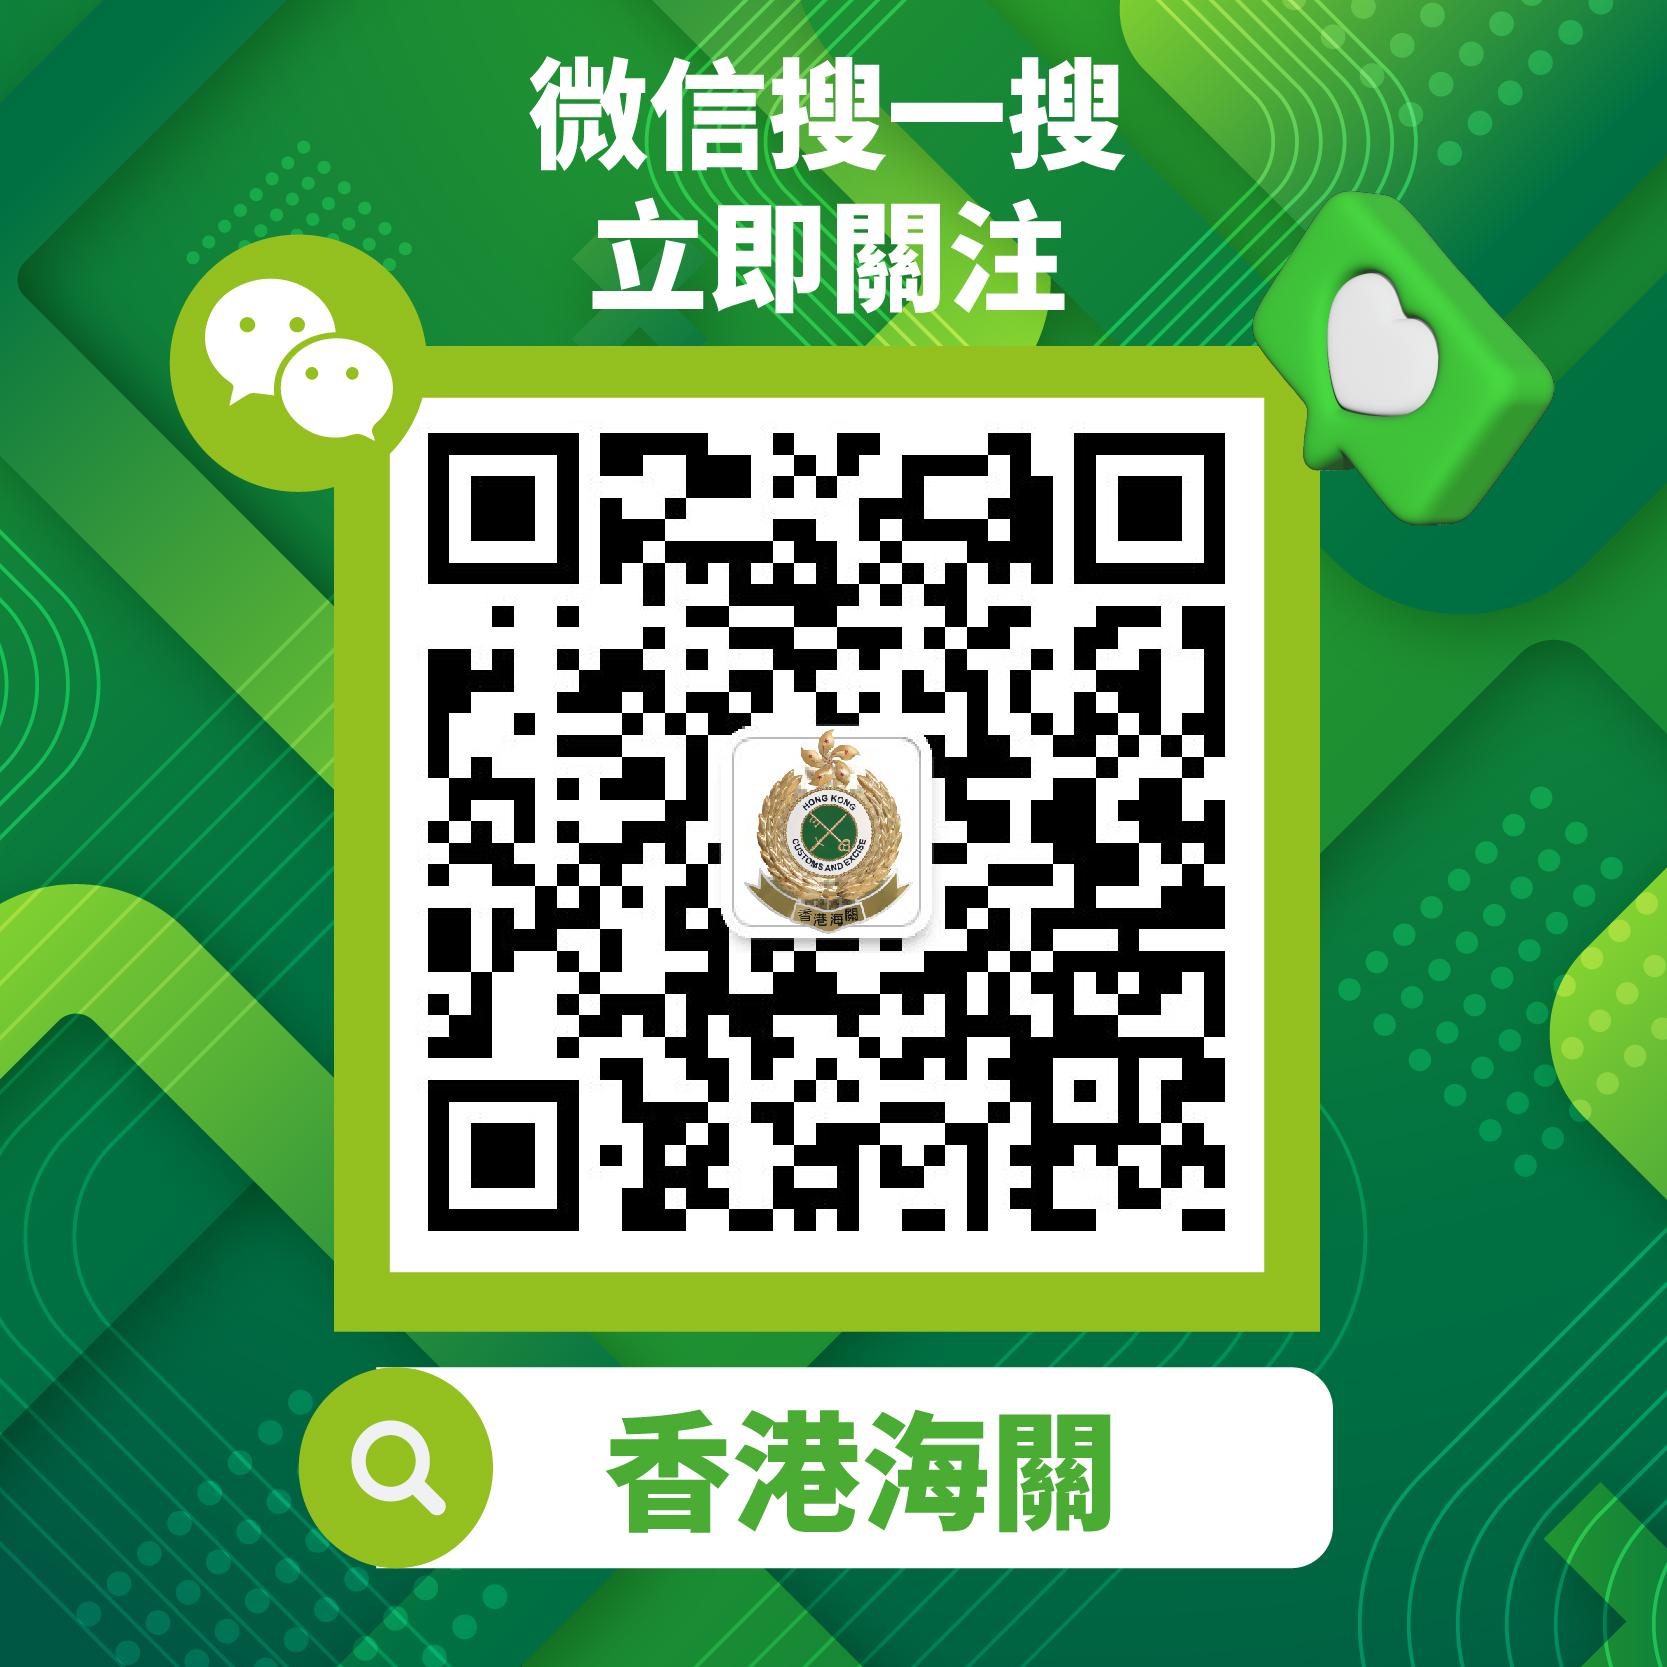 「香港海关」微信官方帐号今日（七月一日）正式启用，图示「香港海关」微信官方帐号的二维码。
